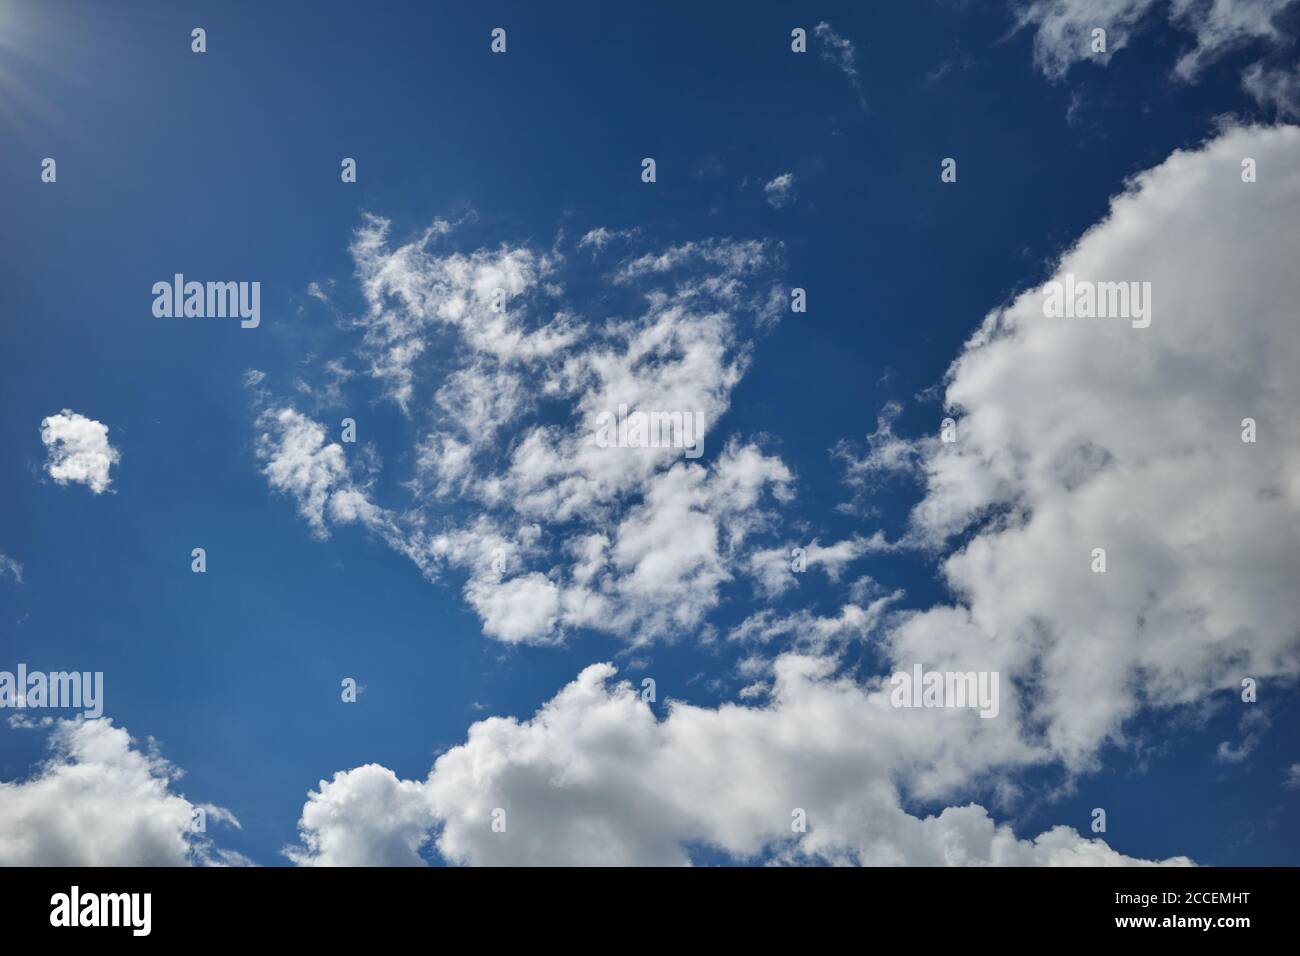 Die Sonnenstrahlen erleuchteten einen blauen Himmel, der mit Kumuluswolken bedeckt war. Hintergrund für Vorhersage und Meteorologie Illustration. Sonneneinstrahlung. Sonnenstrahlen Stockfoto